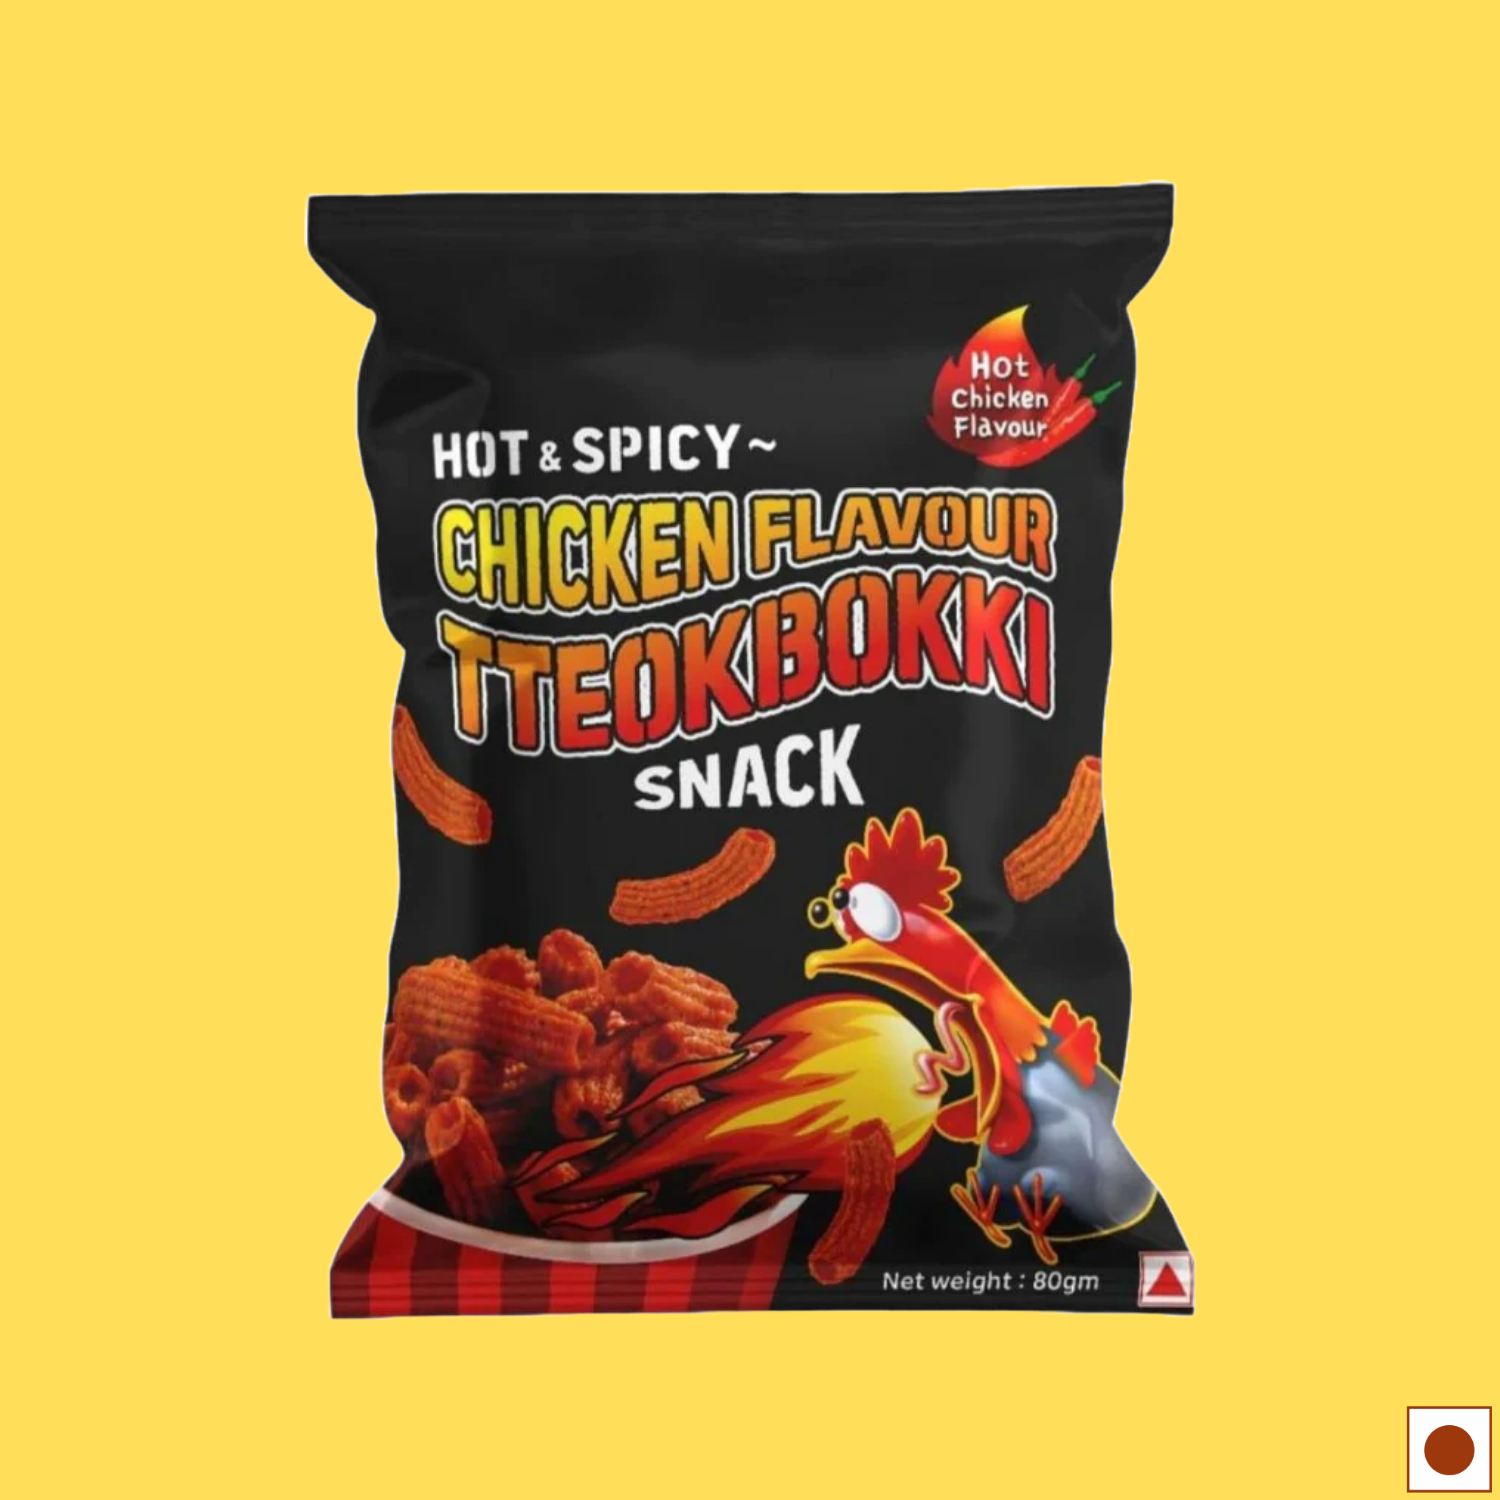 Tteokbokki Snack Hot & Spicy Chicken Flavour, 80g (Imported)